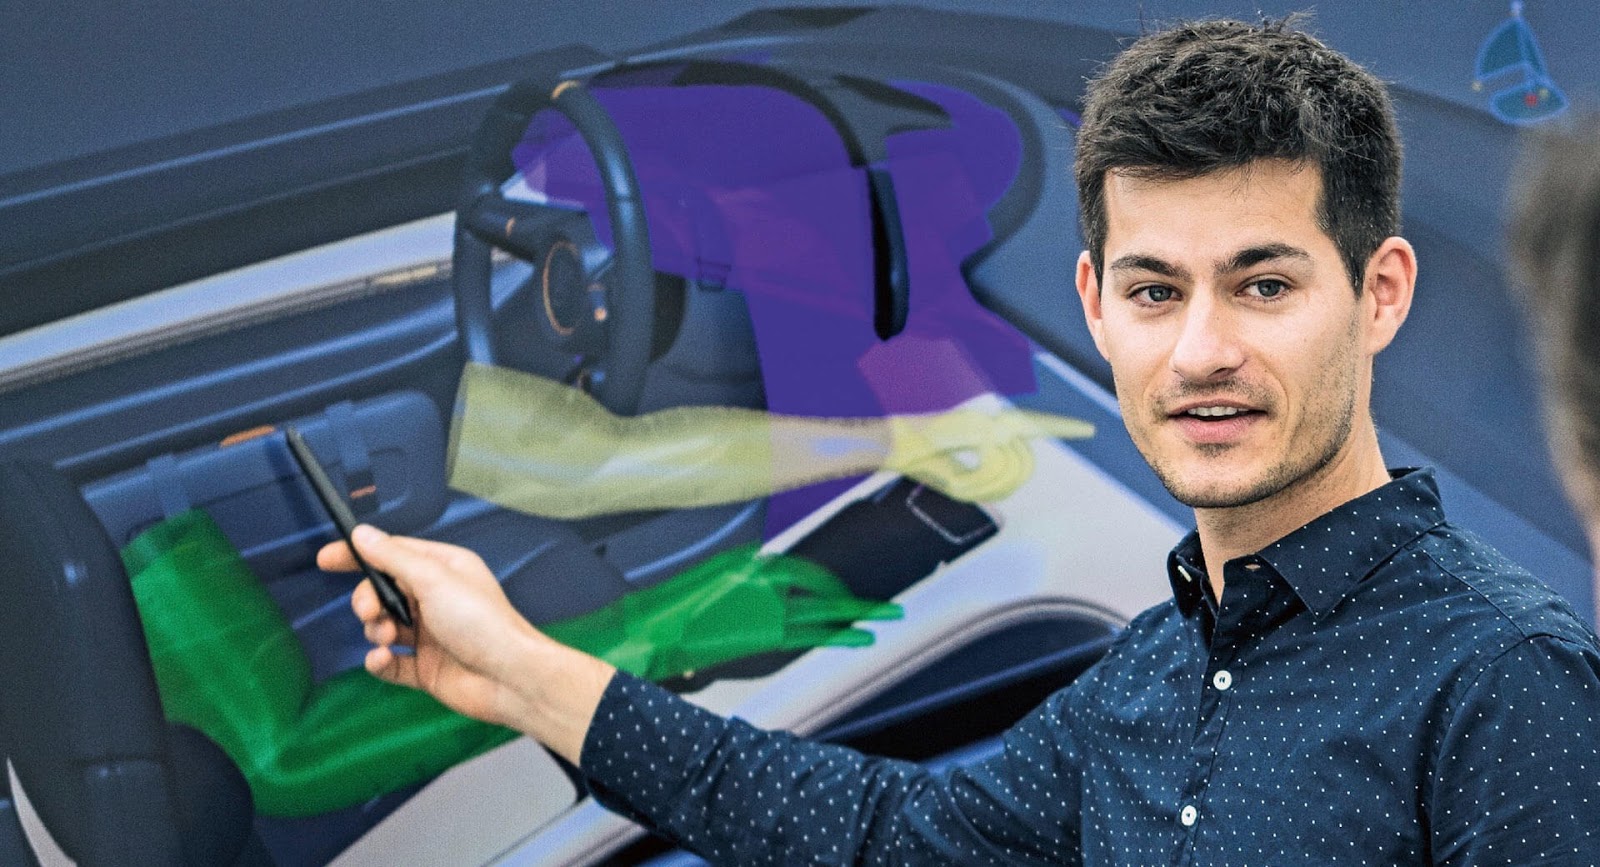 رئيس تصميم بورش يريد دمج تقنية الواقع المعزز بسيارات الشركة